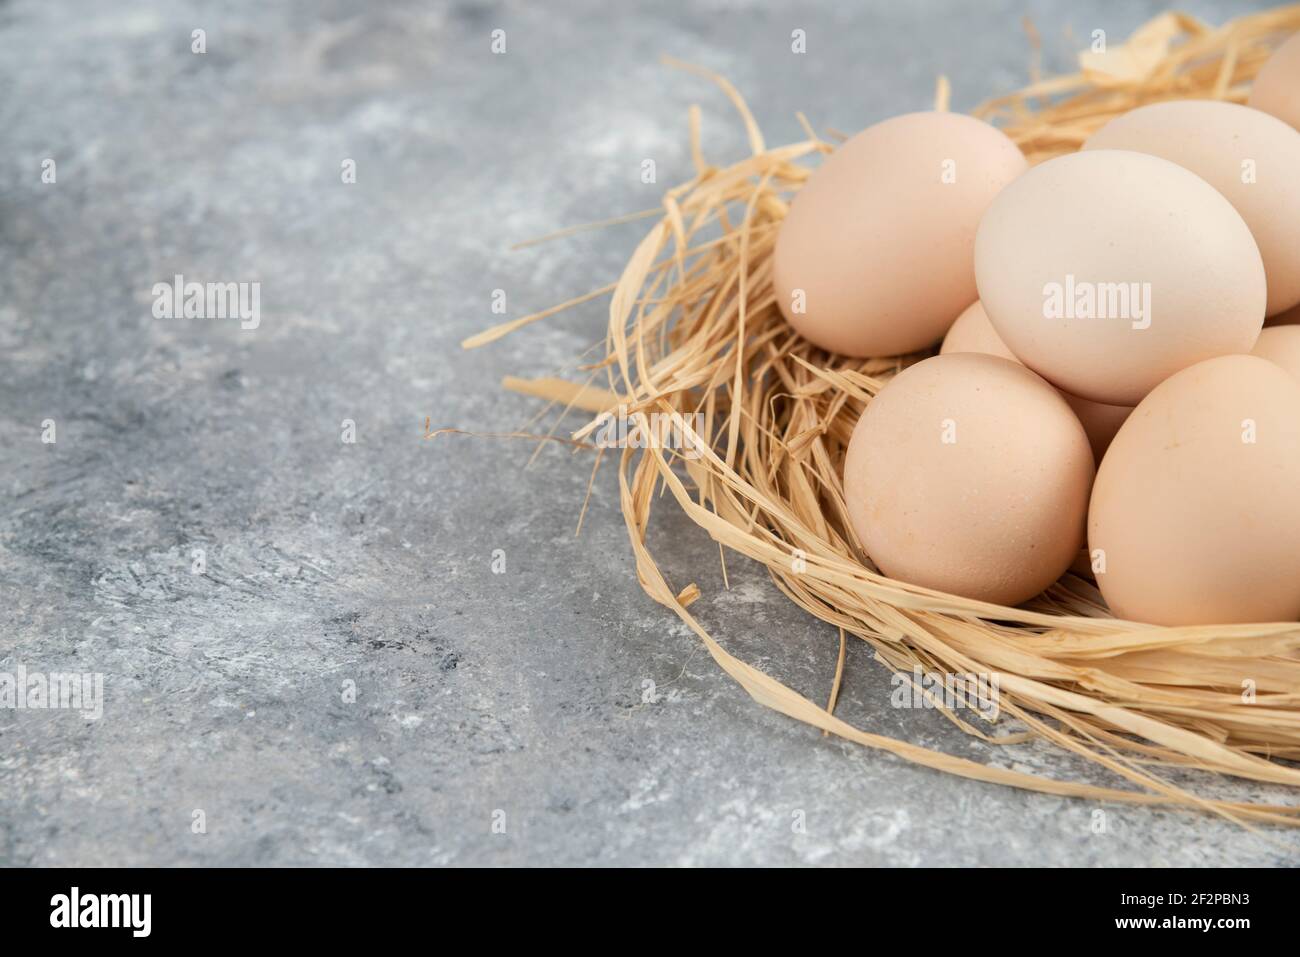 Haufen roher Eier mit Vogelnest auf Marmoroberfläche Stockfoto